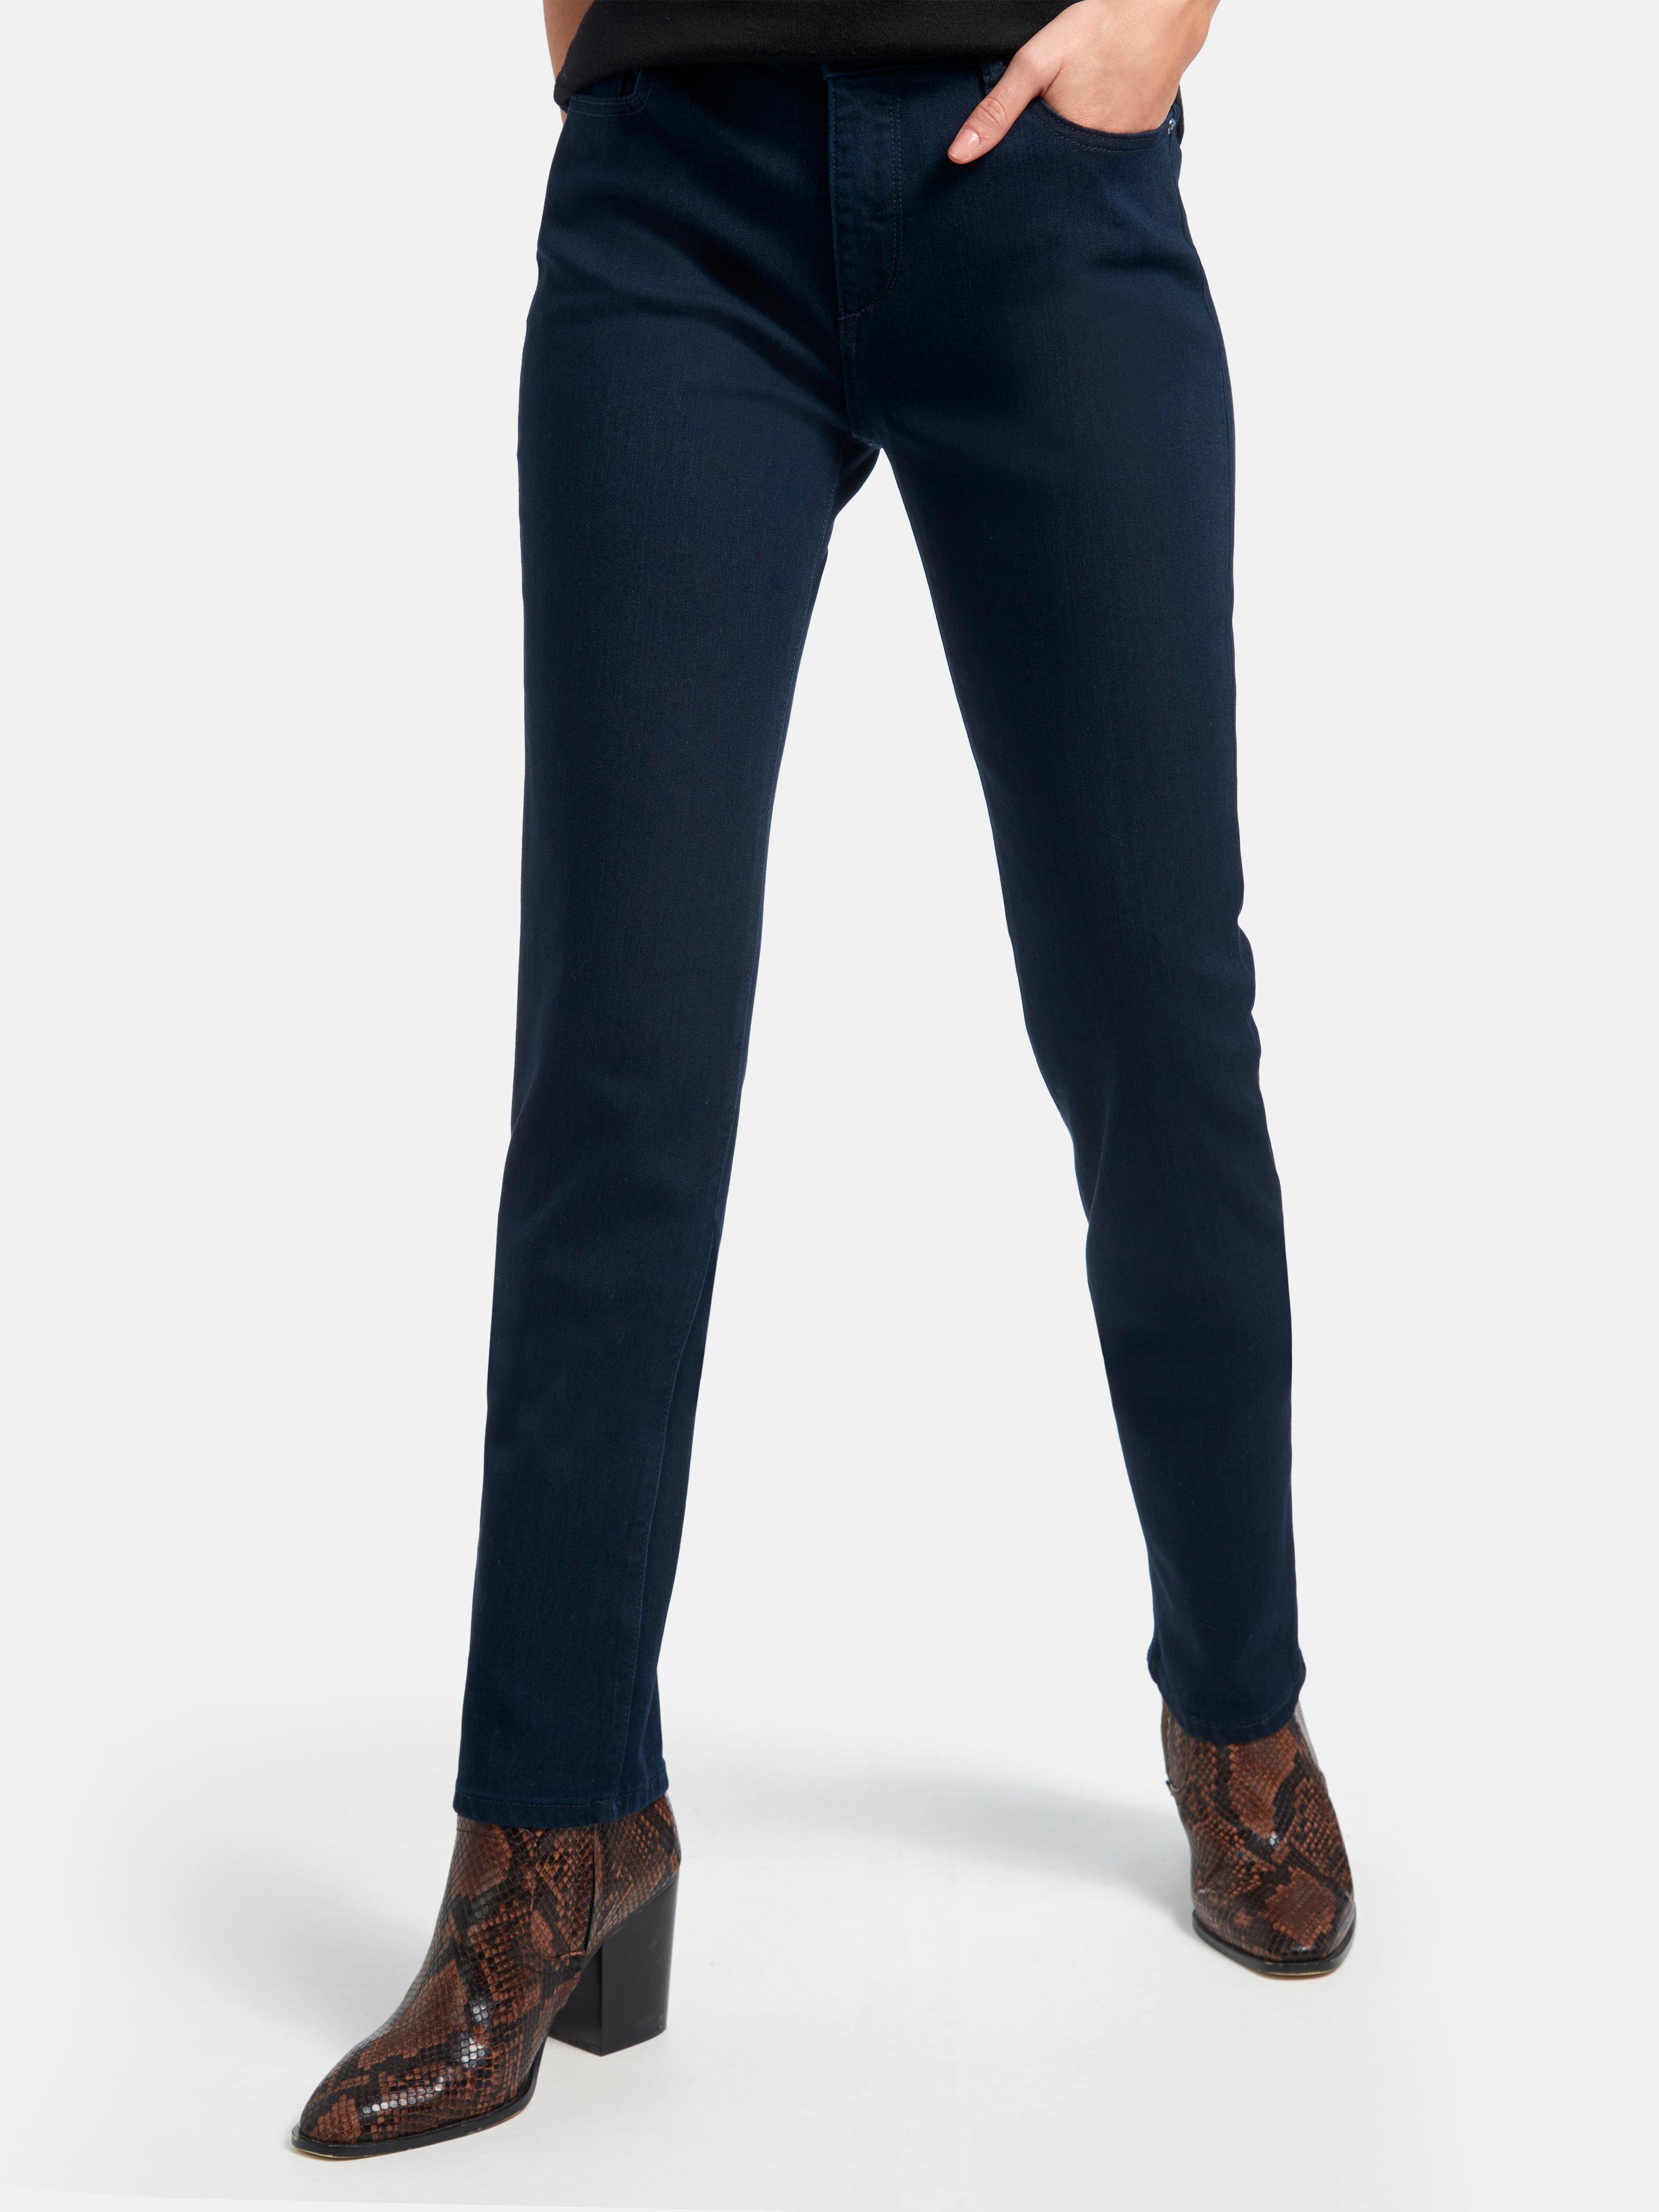 DL1961 - Jeans model Coco met rechte pijpen